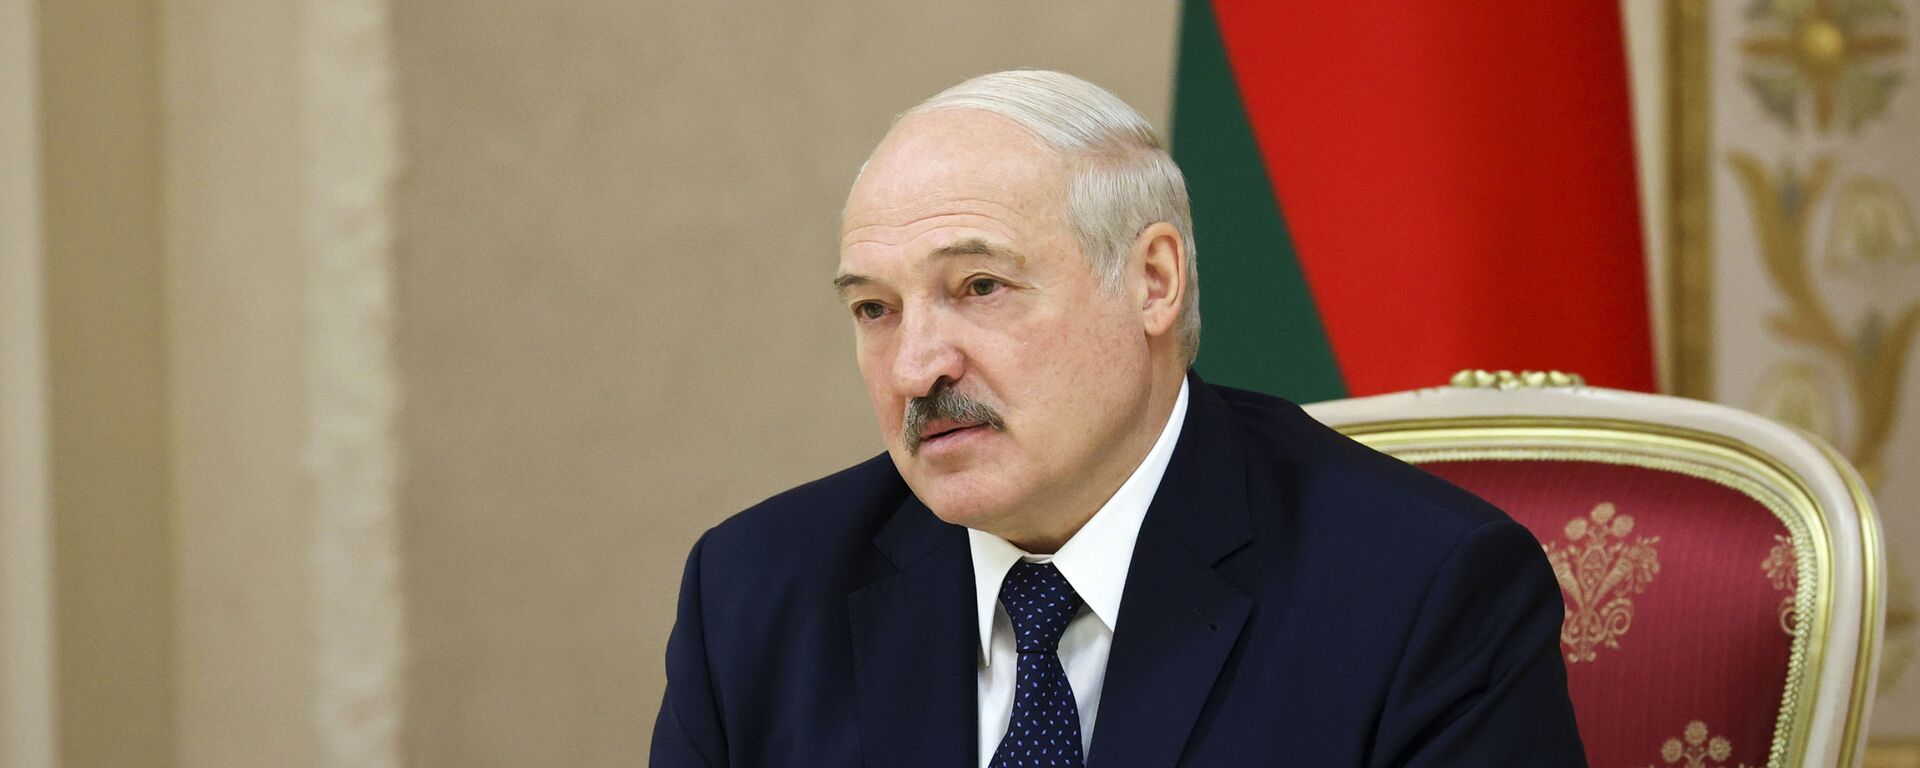 Президент Белоруссии Александр Лукашенко, фото из архива - Sputnik Azərbaycan, 1920, 01.03.2021